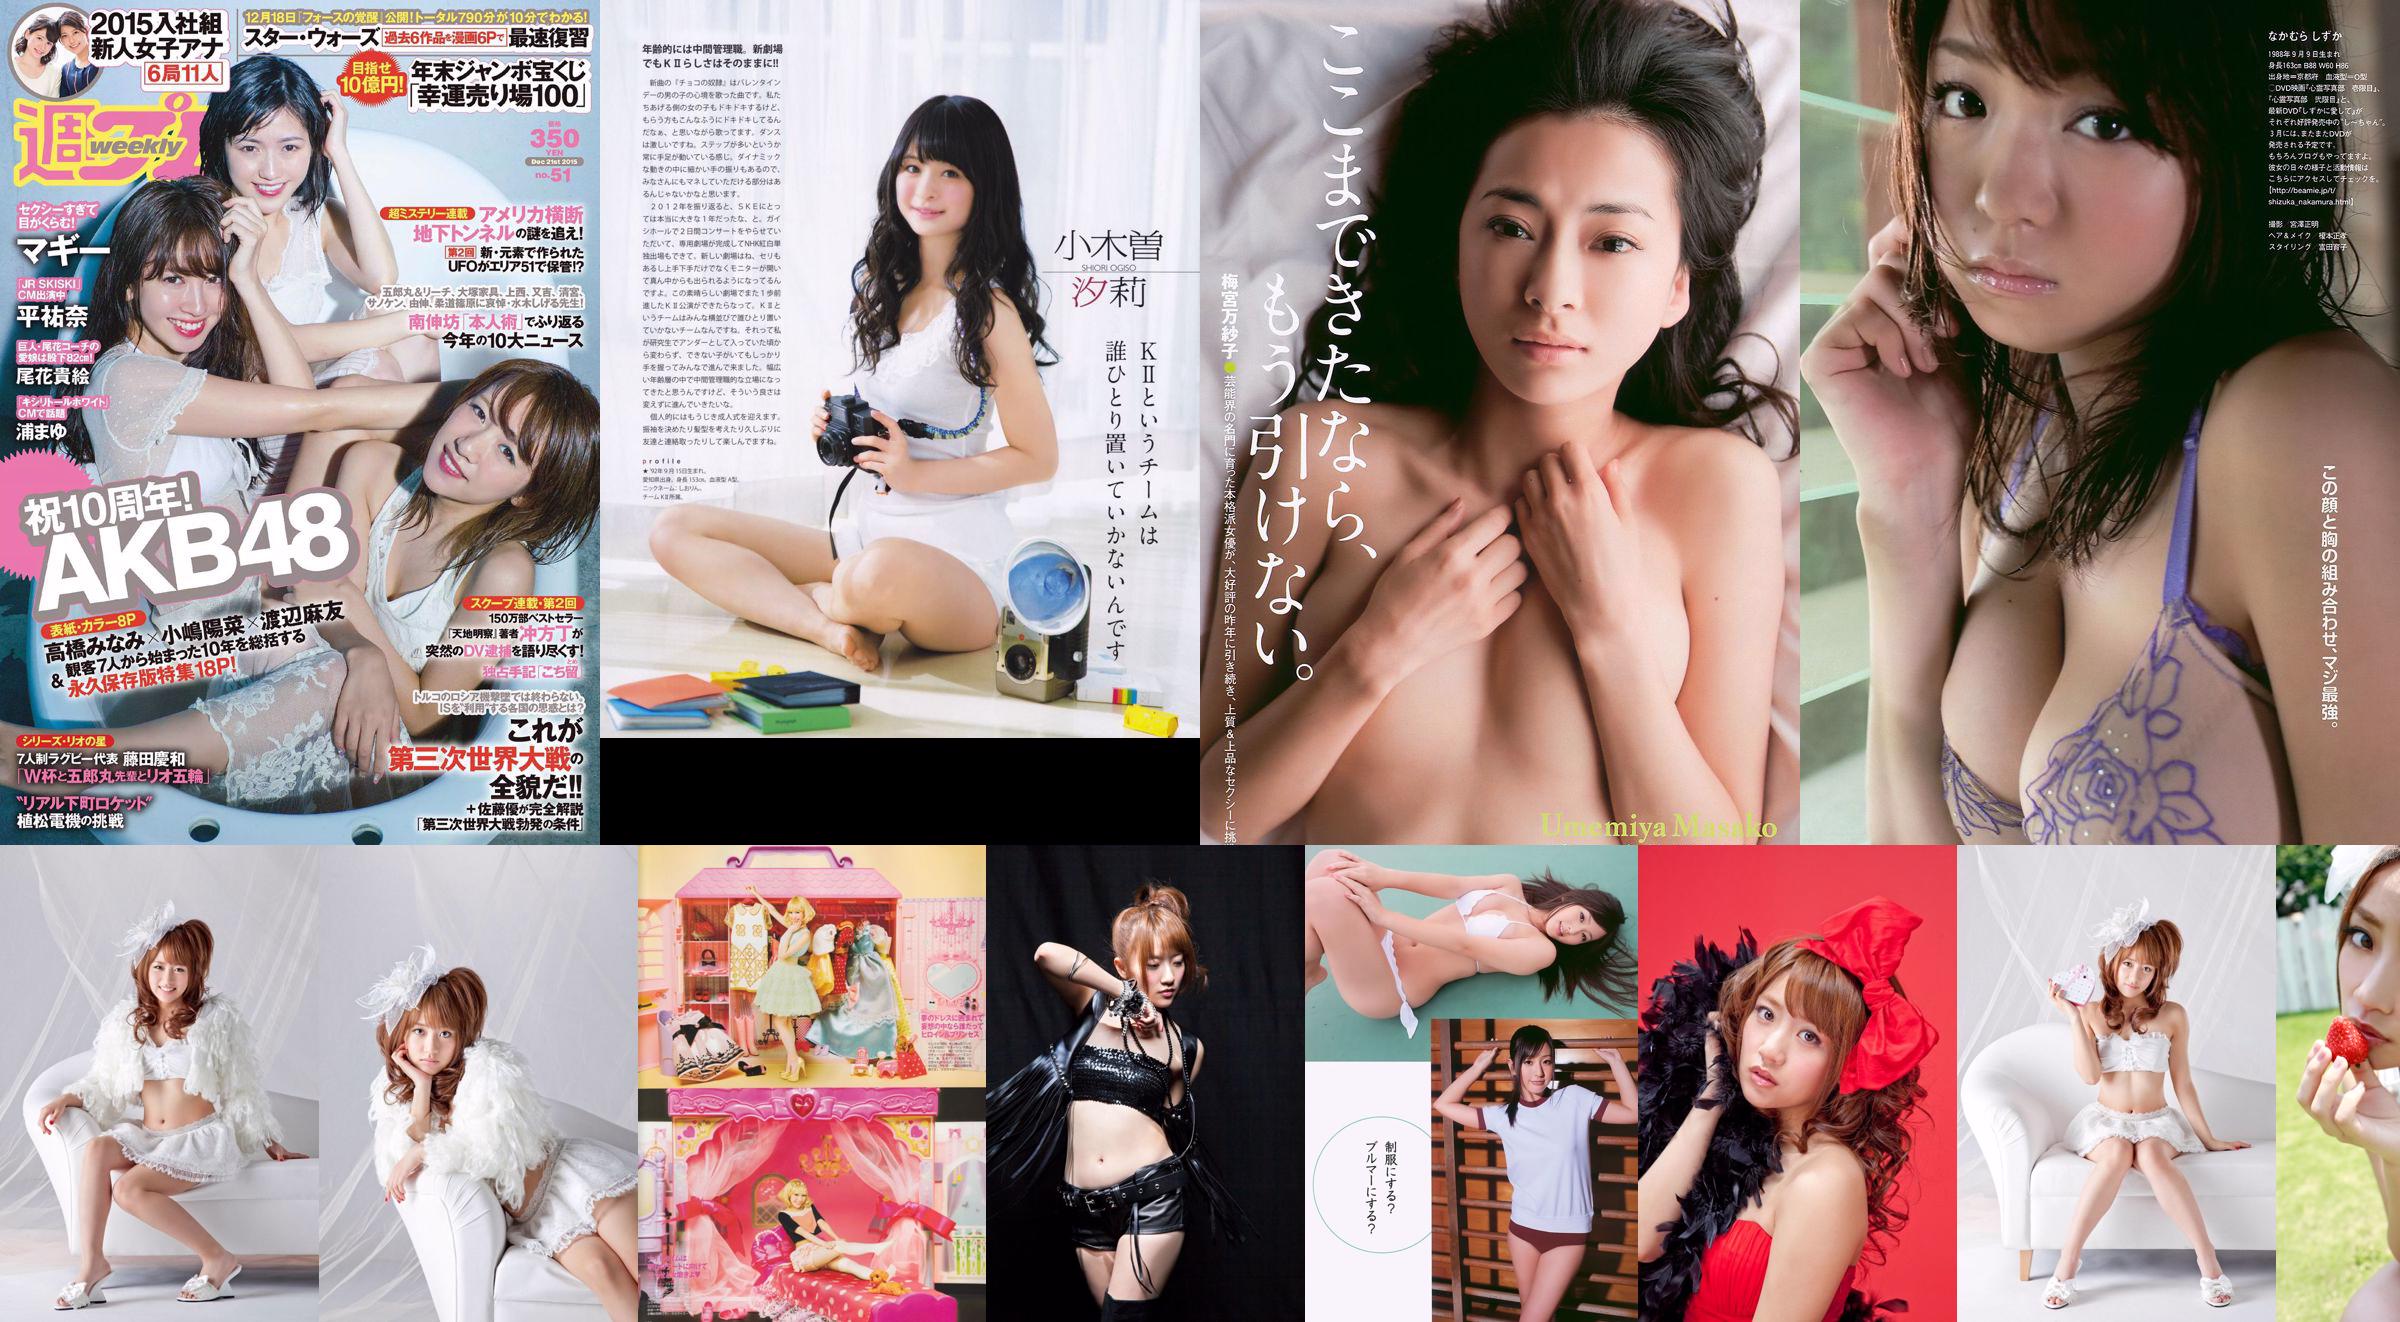 Minami Takahashi Haruna Kojima Mayu Watanabe Maggie Takae Obana Yuna Taira Mayu Ura Mitadera En [Wekelijkse Playboy] 2015 No.51 Foto No.802092 Pagina 1